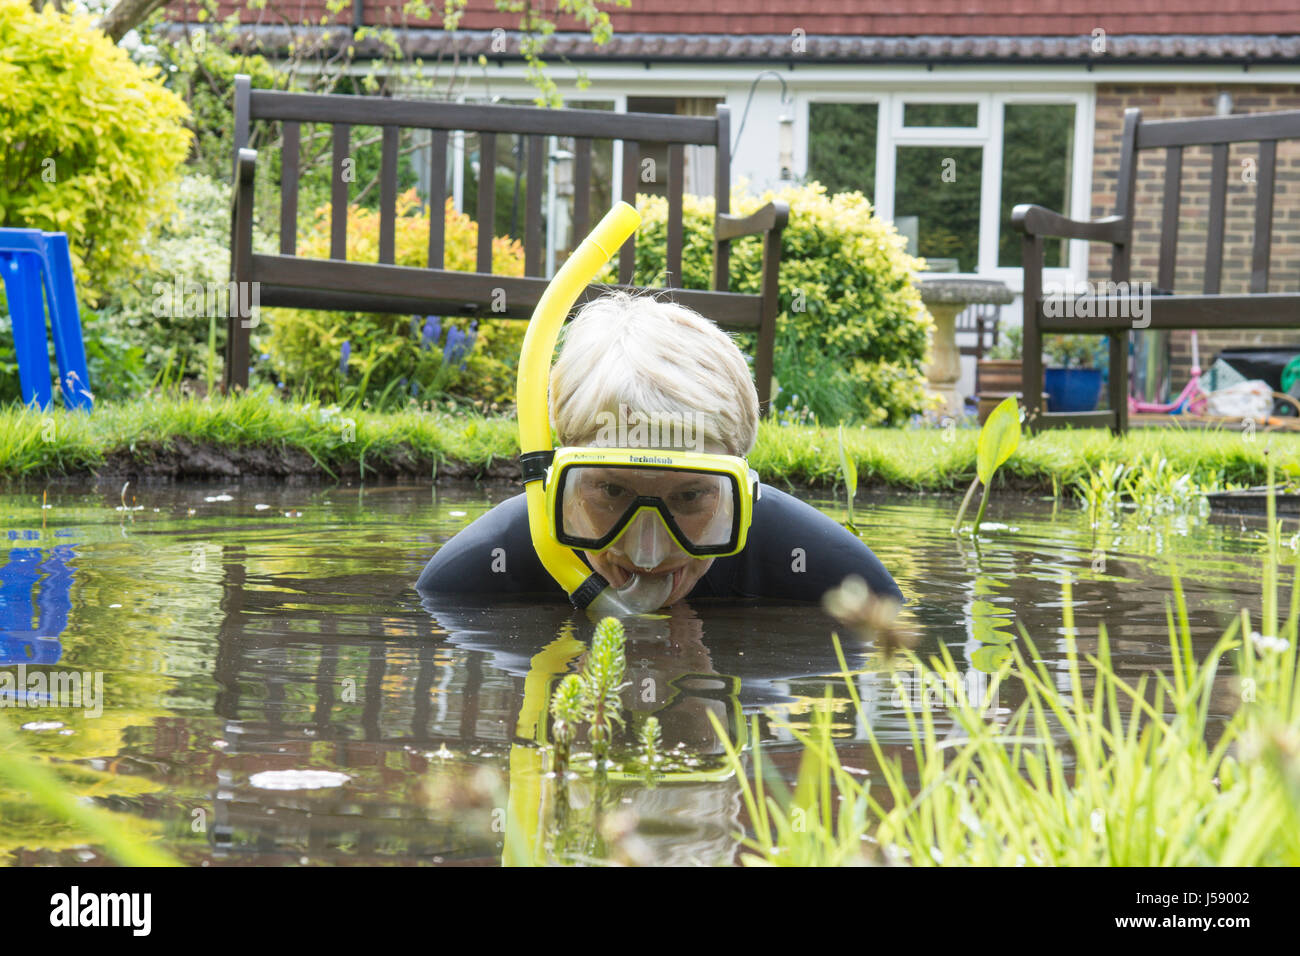 Donna matura divertirsi indossando muta, occhiali, snorkel, nel piccolo laghetto in giardino, lo spostamento di piante dello stagno. Avendo una risata. Solo per divertimento. Come uno scherzo. Regno Unito. Foto Stock